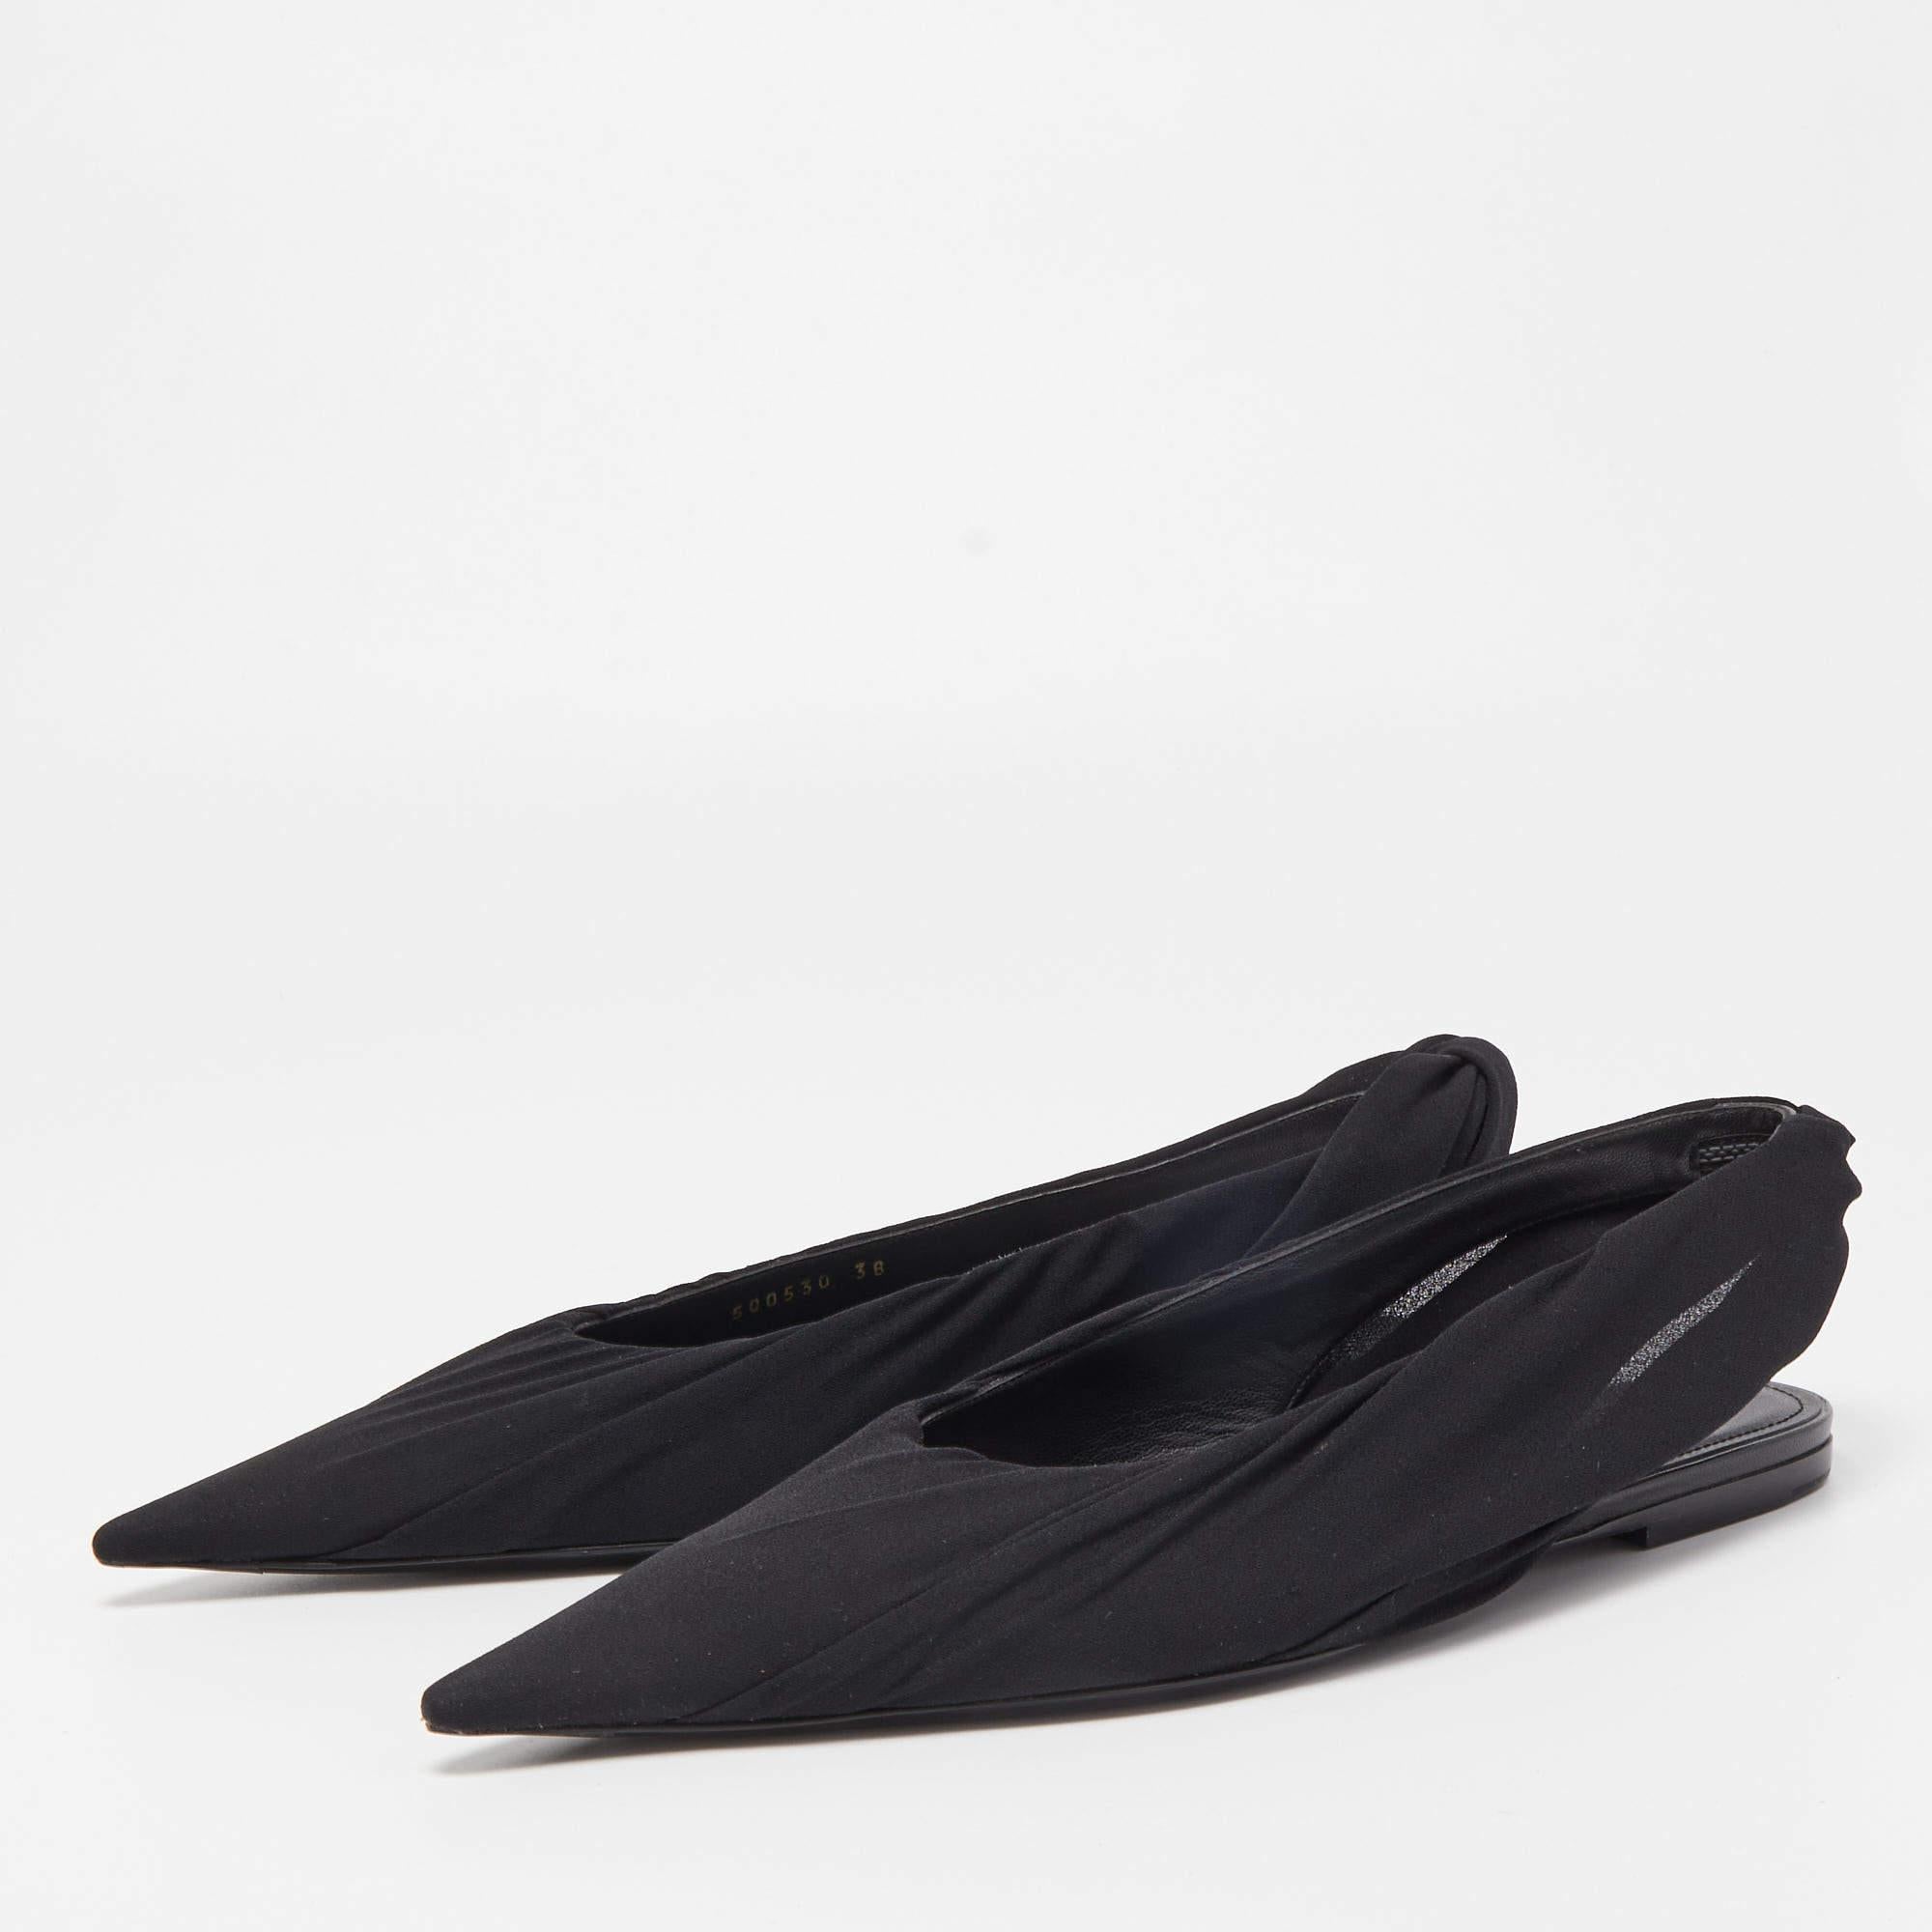 Les chaussures plates de Balenciaga sont des chaussures élégantes et polyvalentes. Fabrice en tissu noir épuré, ils présentent un bout pointu et une fine bride à l'arrière pour un look chic et minimaliste. Ces chaussures plates offrent confort et